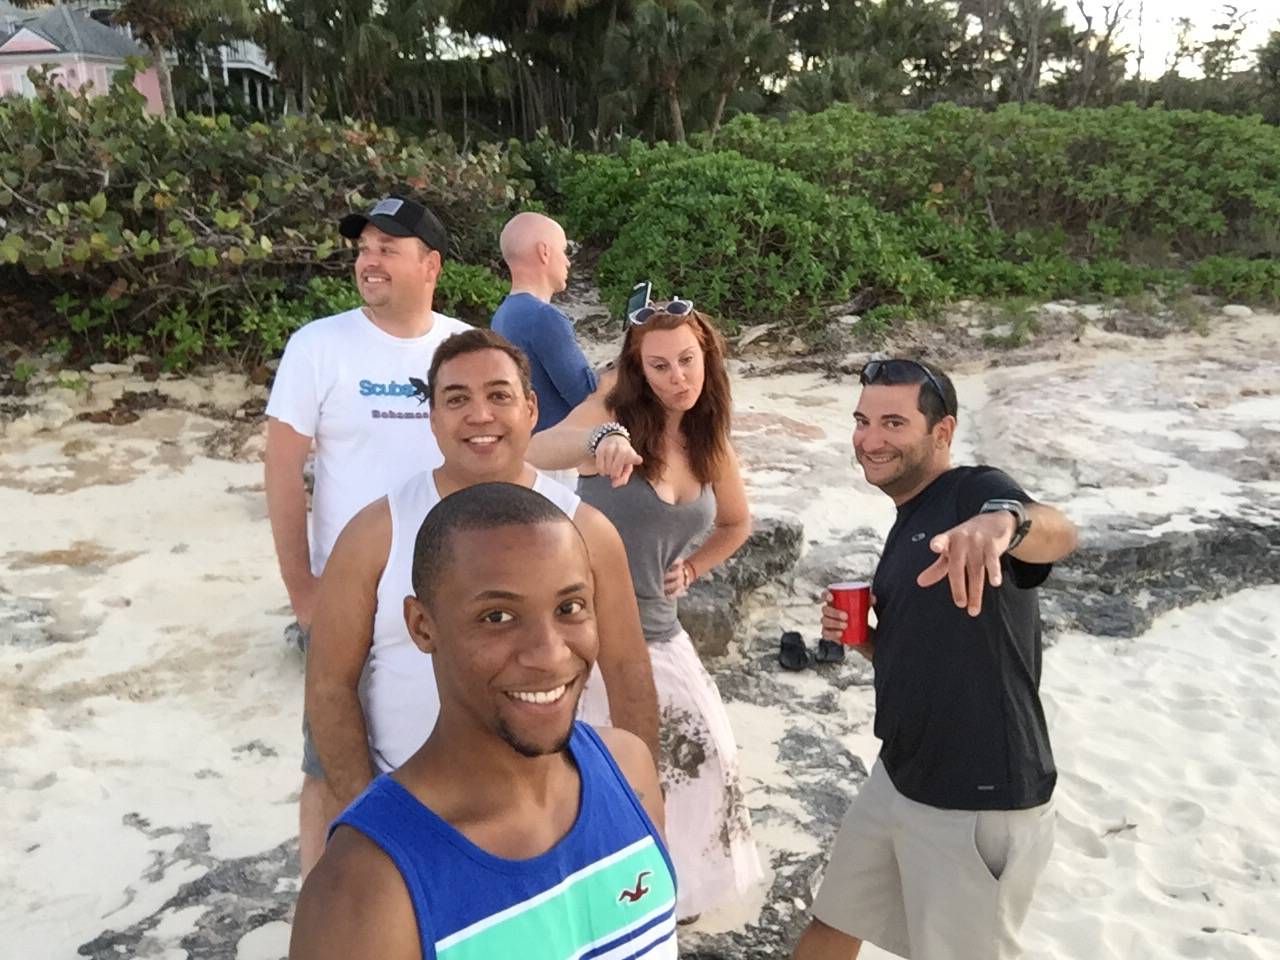 The gang on the beach